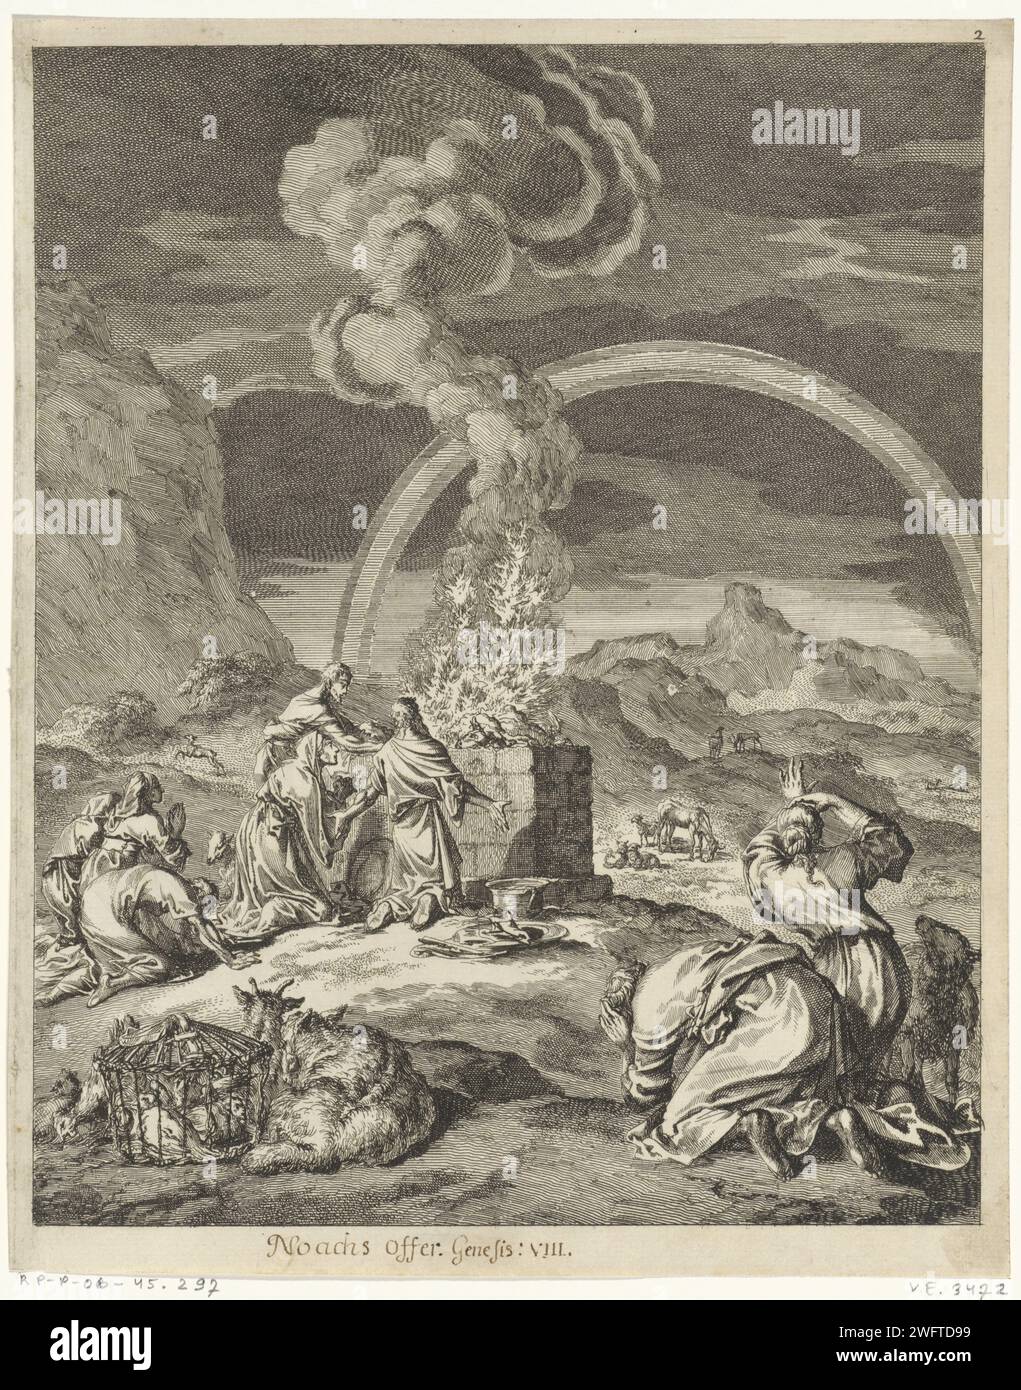 Angebot von Noah, Jan Luyken, 1708 Druck Amsterdamer Papier, das Noahs Opfer ätzt; verschiedene Tiere werden angeboten, möglicherweise ein Lamm, eine Taube und ein Widder (oft kombiniert mit dem Regenbogen des Bundes) Stockfoto